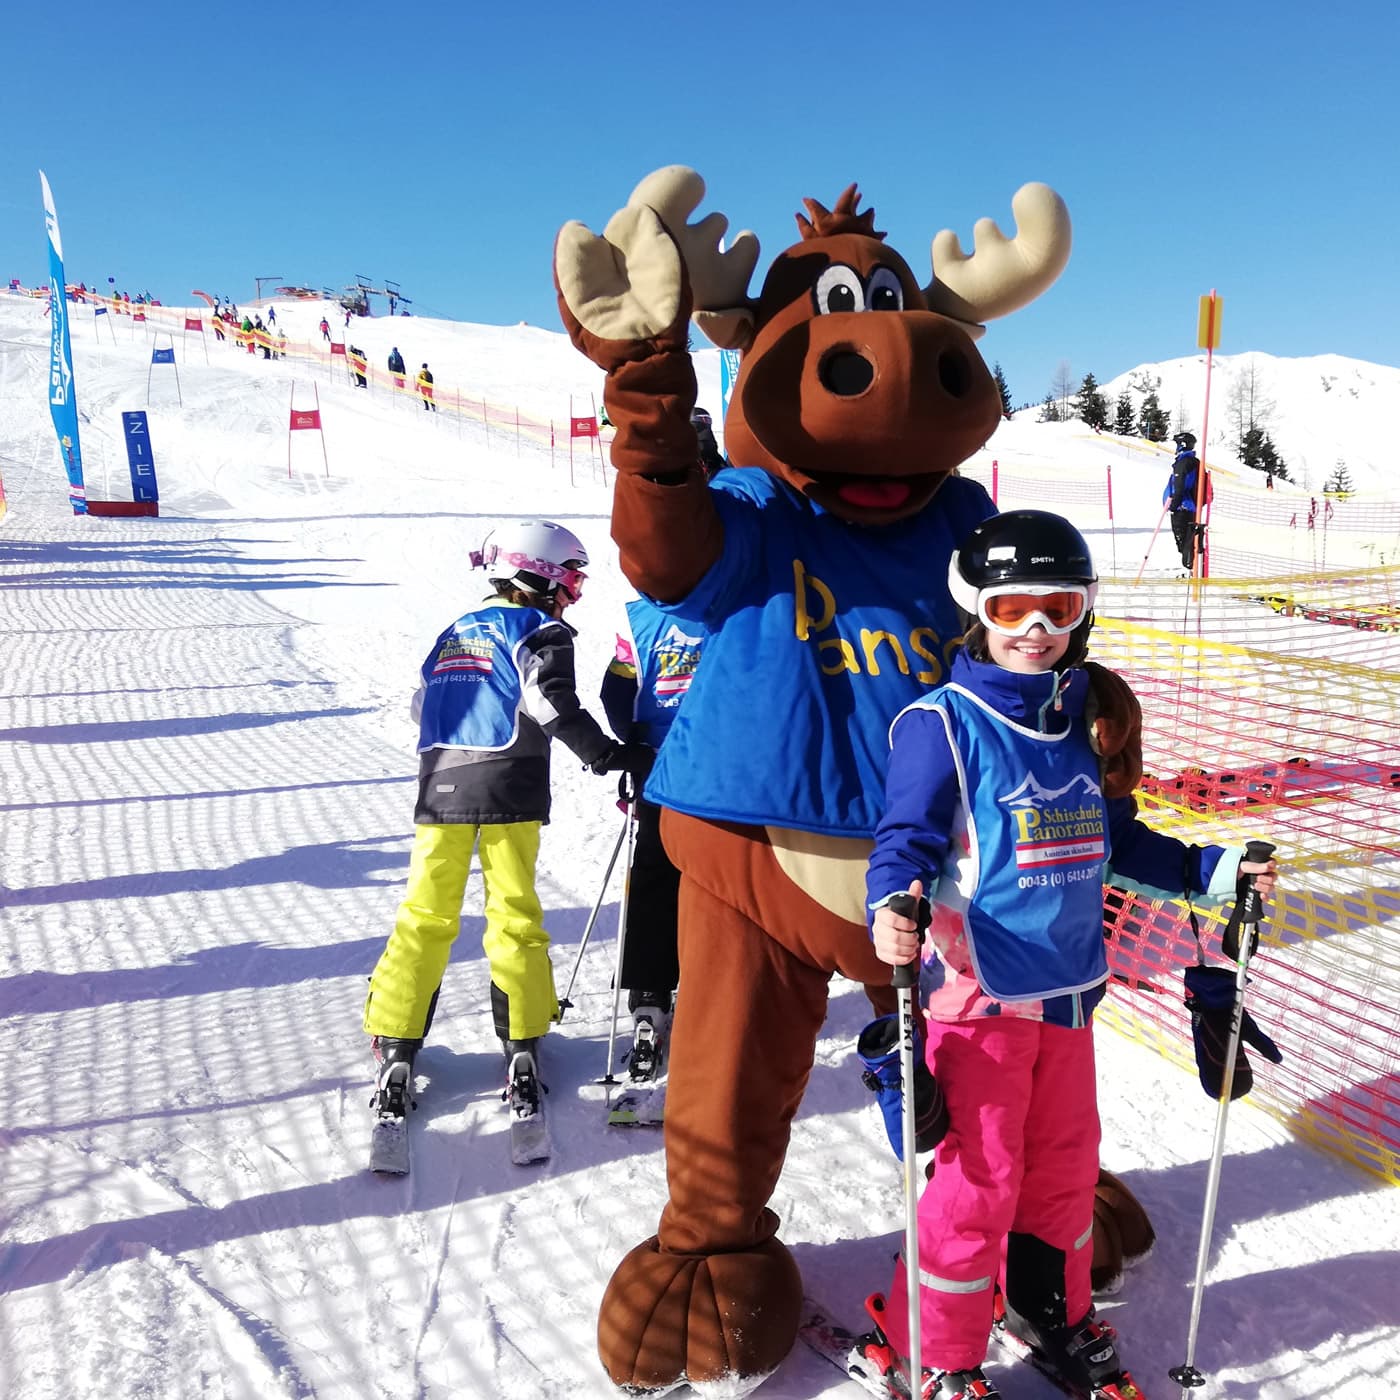 02 Kinder Lernen Skifahren In Der Skischule Panorama C Sandy Bossier Steuerwald